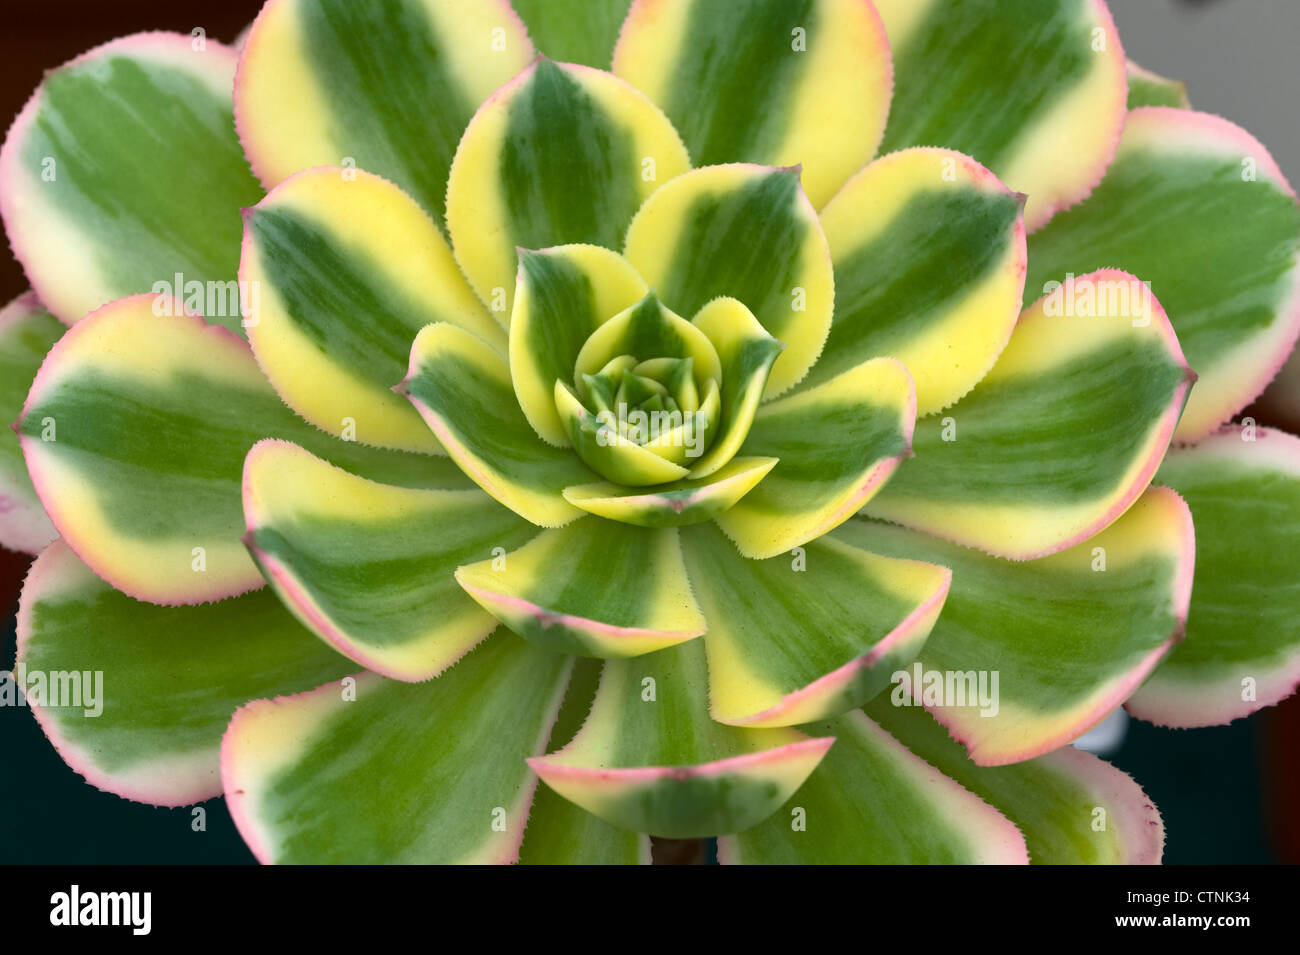 aeonium sunburst drought tolerant succulent  in close up closeup macro showing striped detail Stock Photo